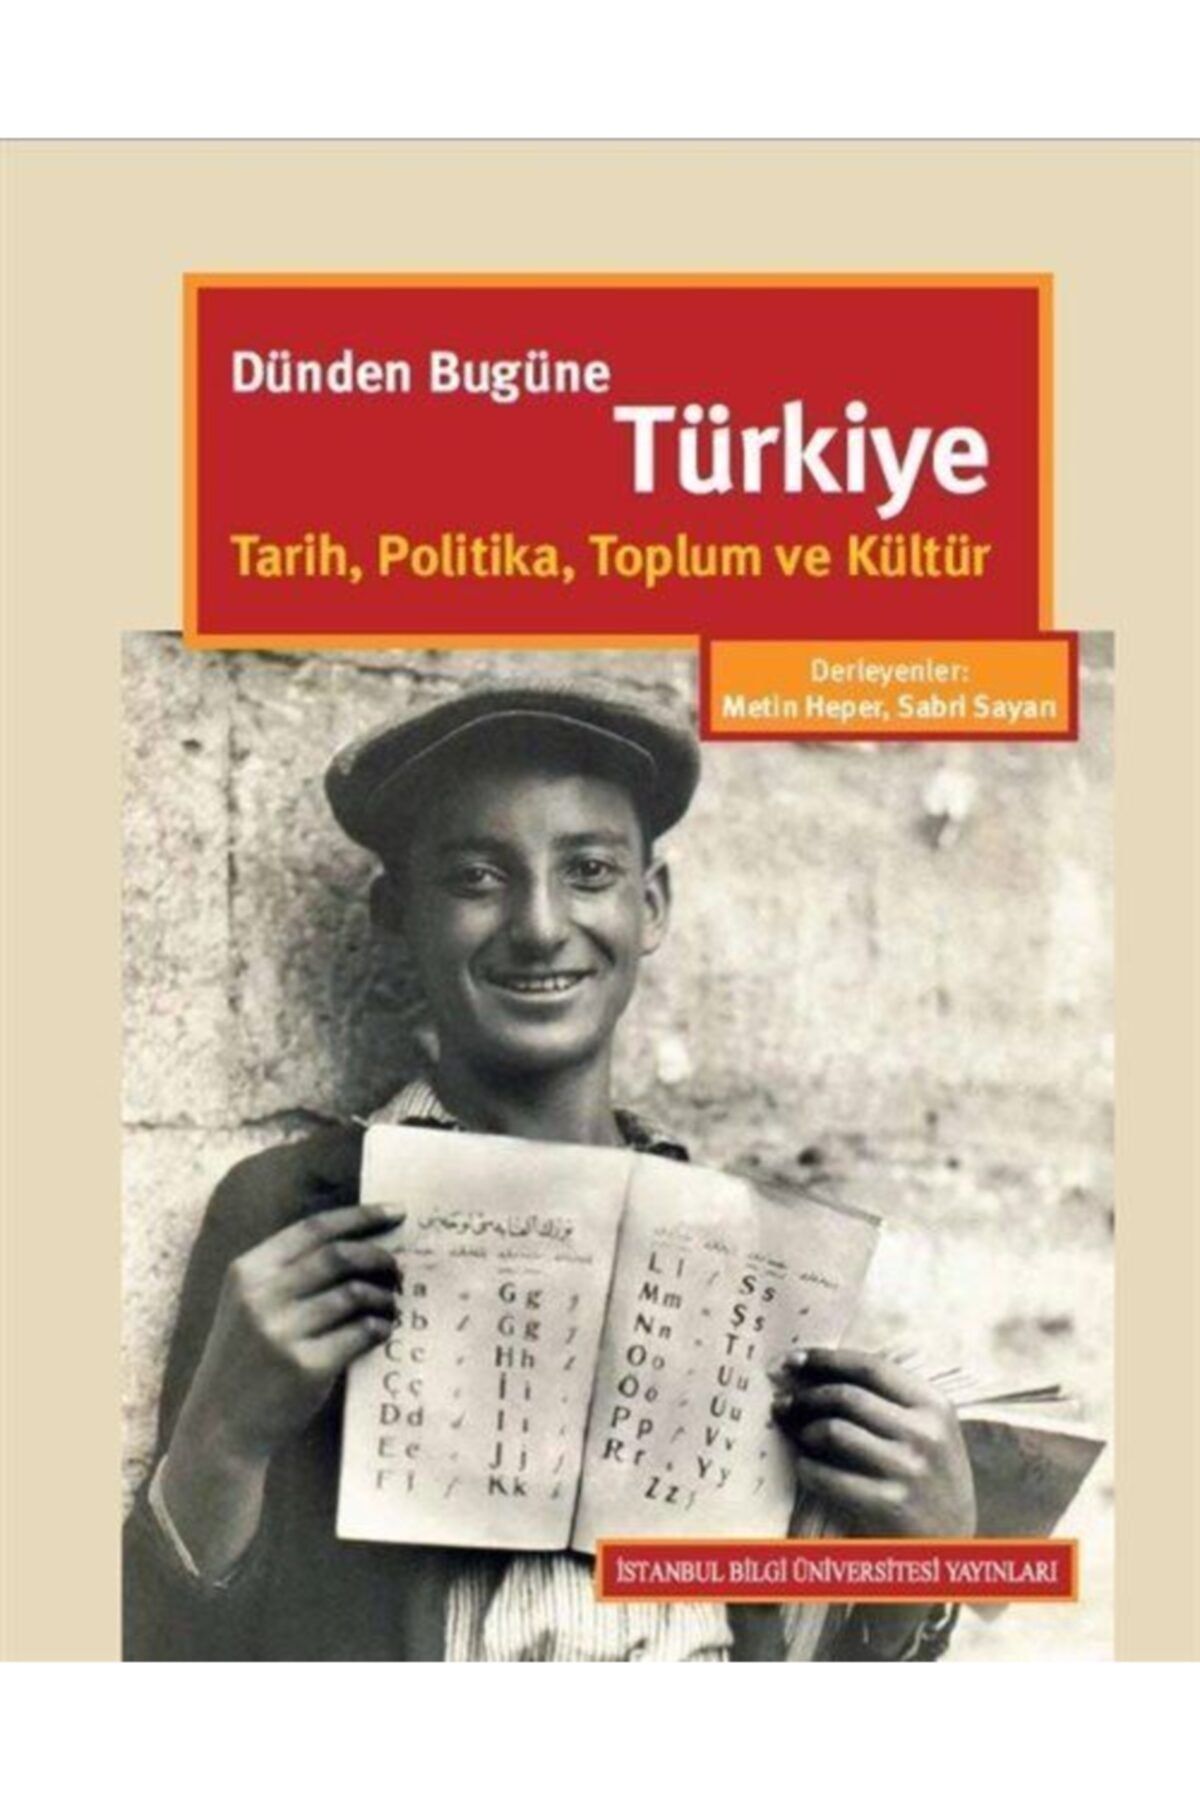 İstanbul Bilgi Üniversitesi Yayınları Dünden Bugüne Türkiye & Tarih, Politika, Toplum Ve Kültür